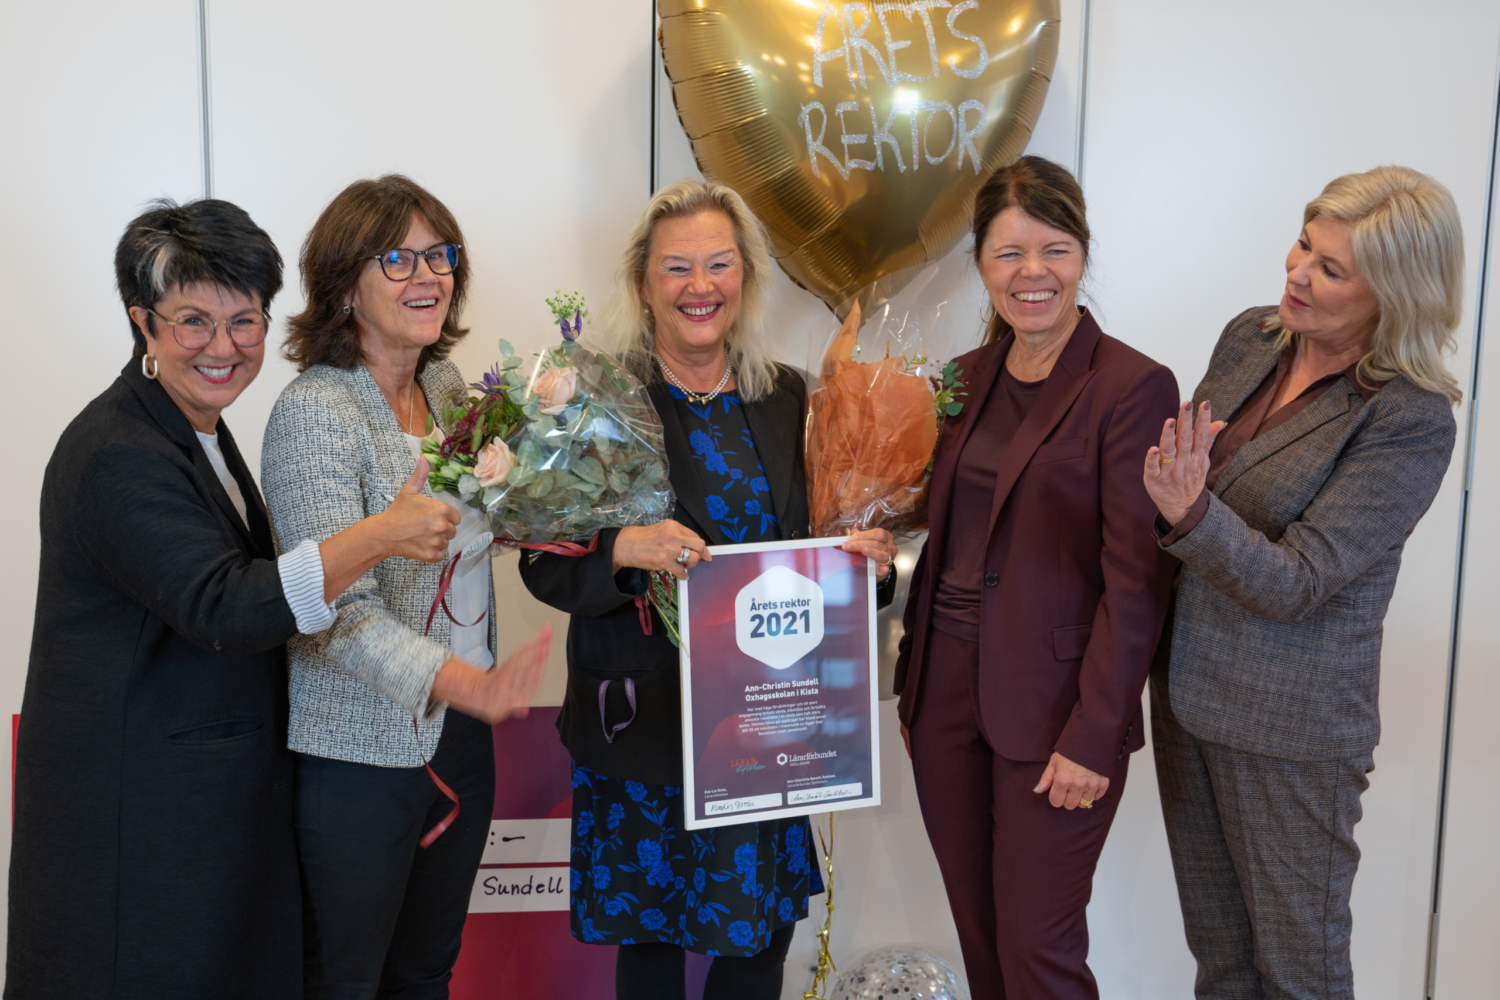 Ann-Christin Sundell med andra när hon tar emot priset som Årets rektor 2021